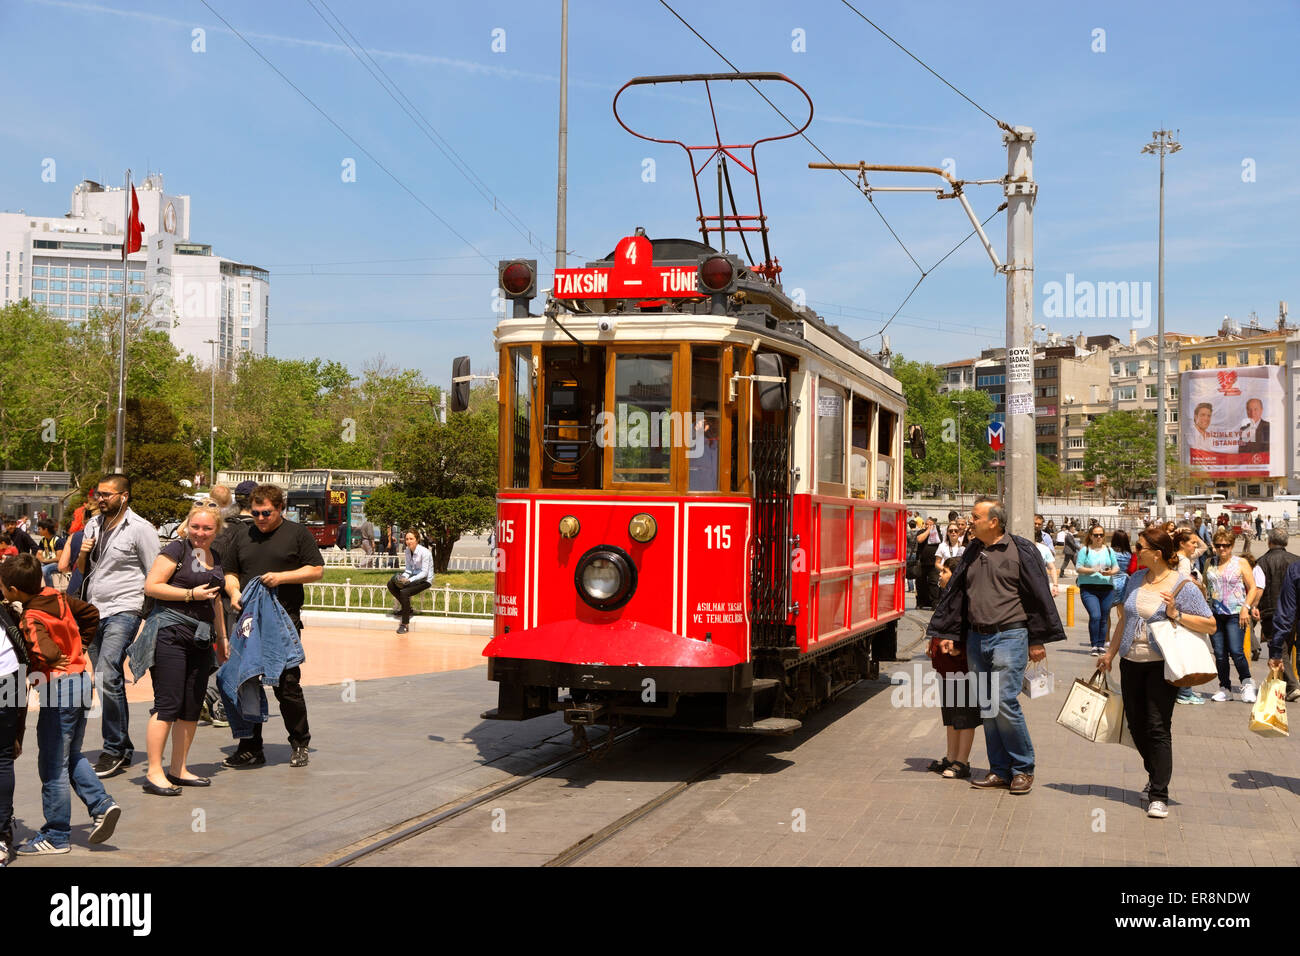 Alte antike Straßenbahn am Taksim-Platz, Istanbul, Türkei. Bietet kurze Fahrten für Touristen durch die Fußgängerzone Istanbuls. Stockfoto